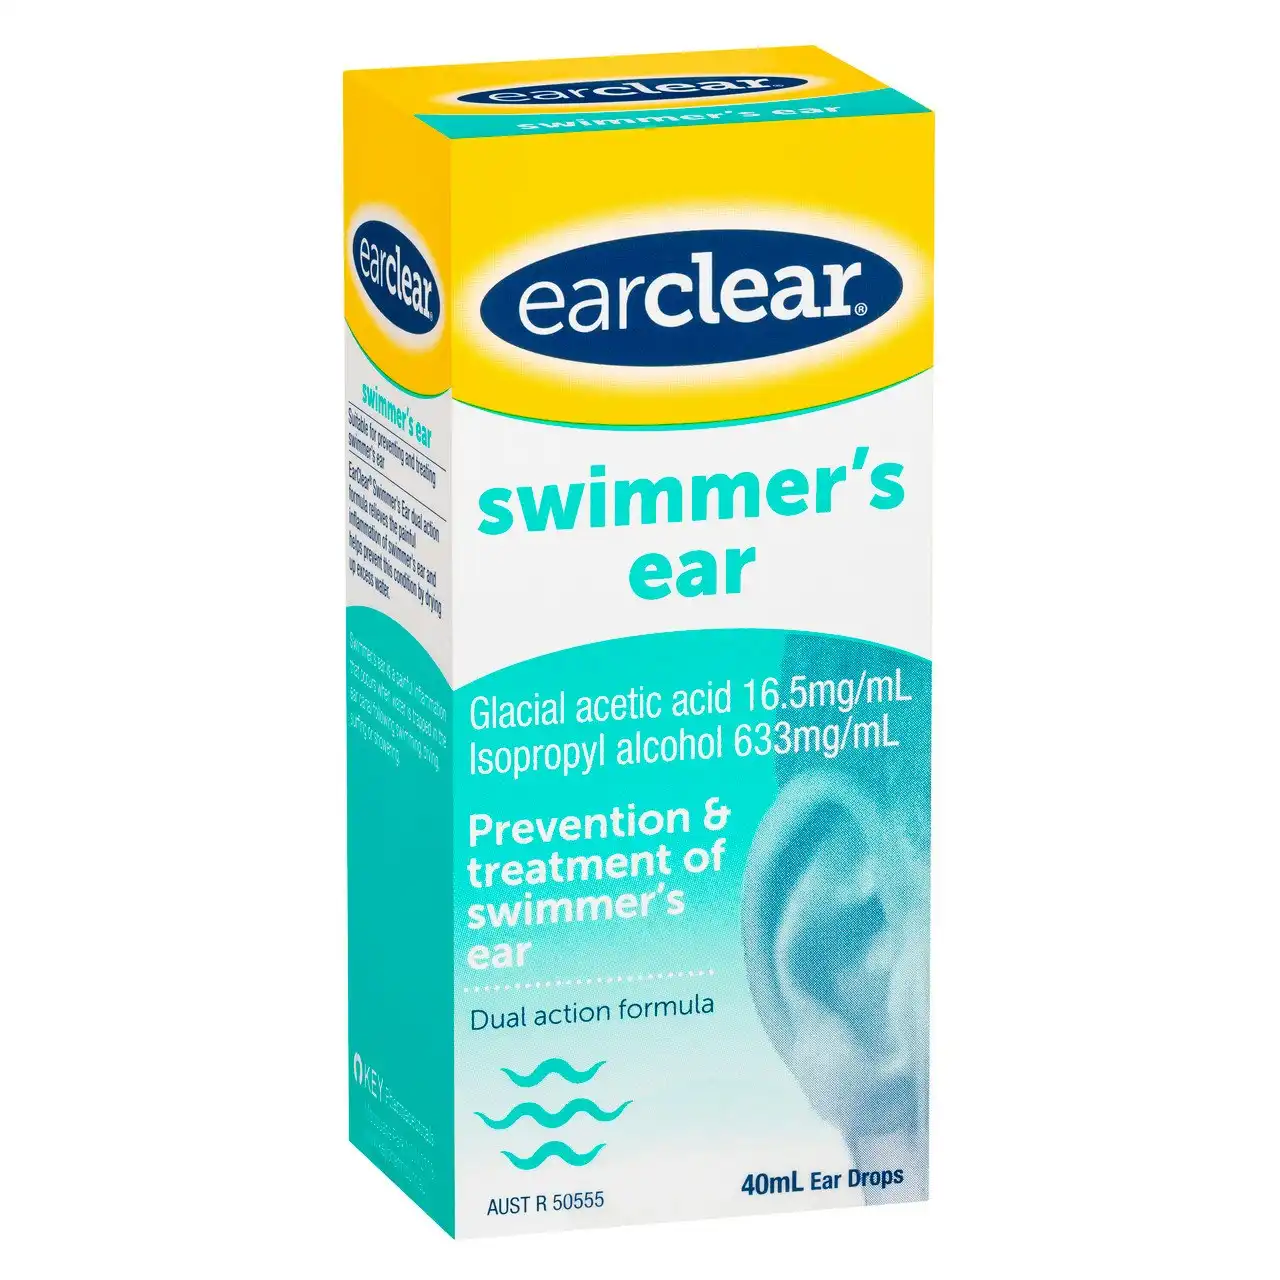 earclear swimmer's ear 40mL